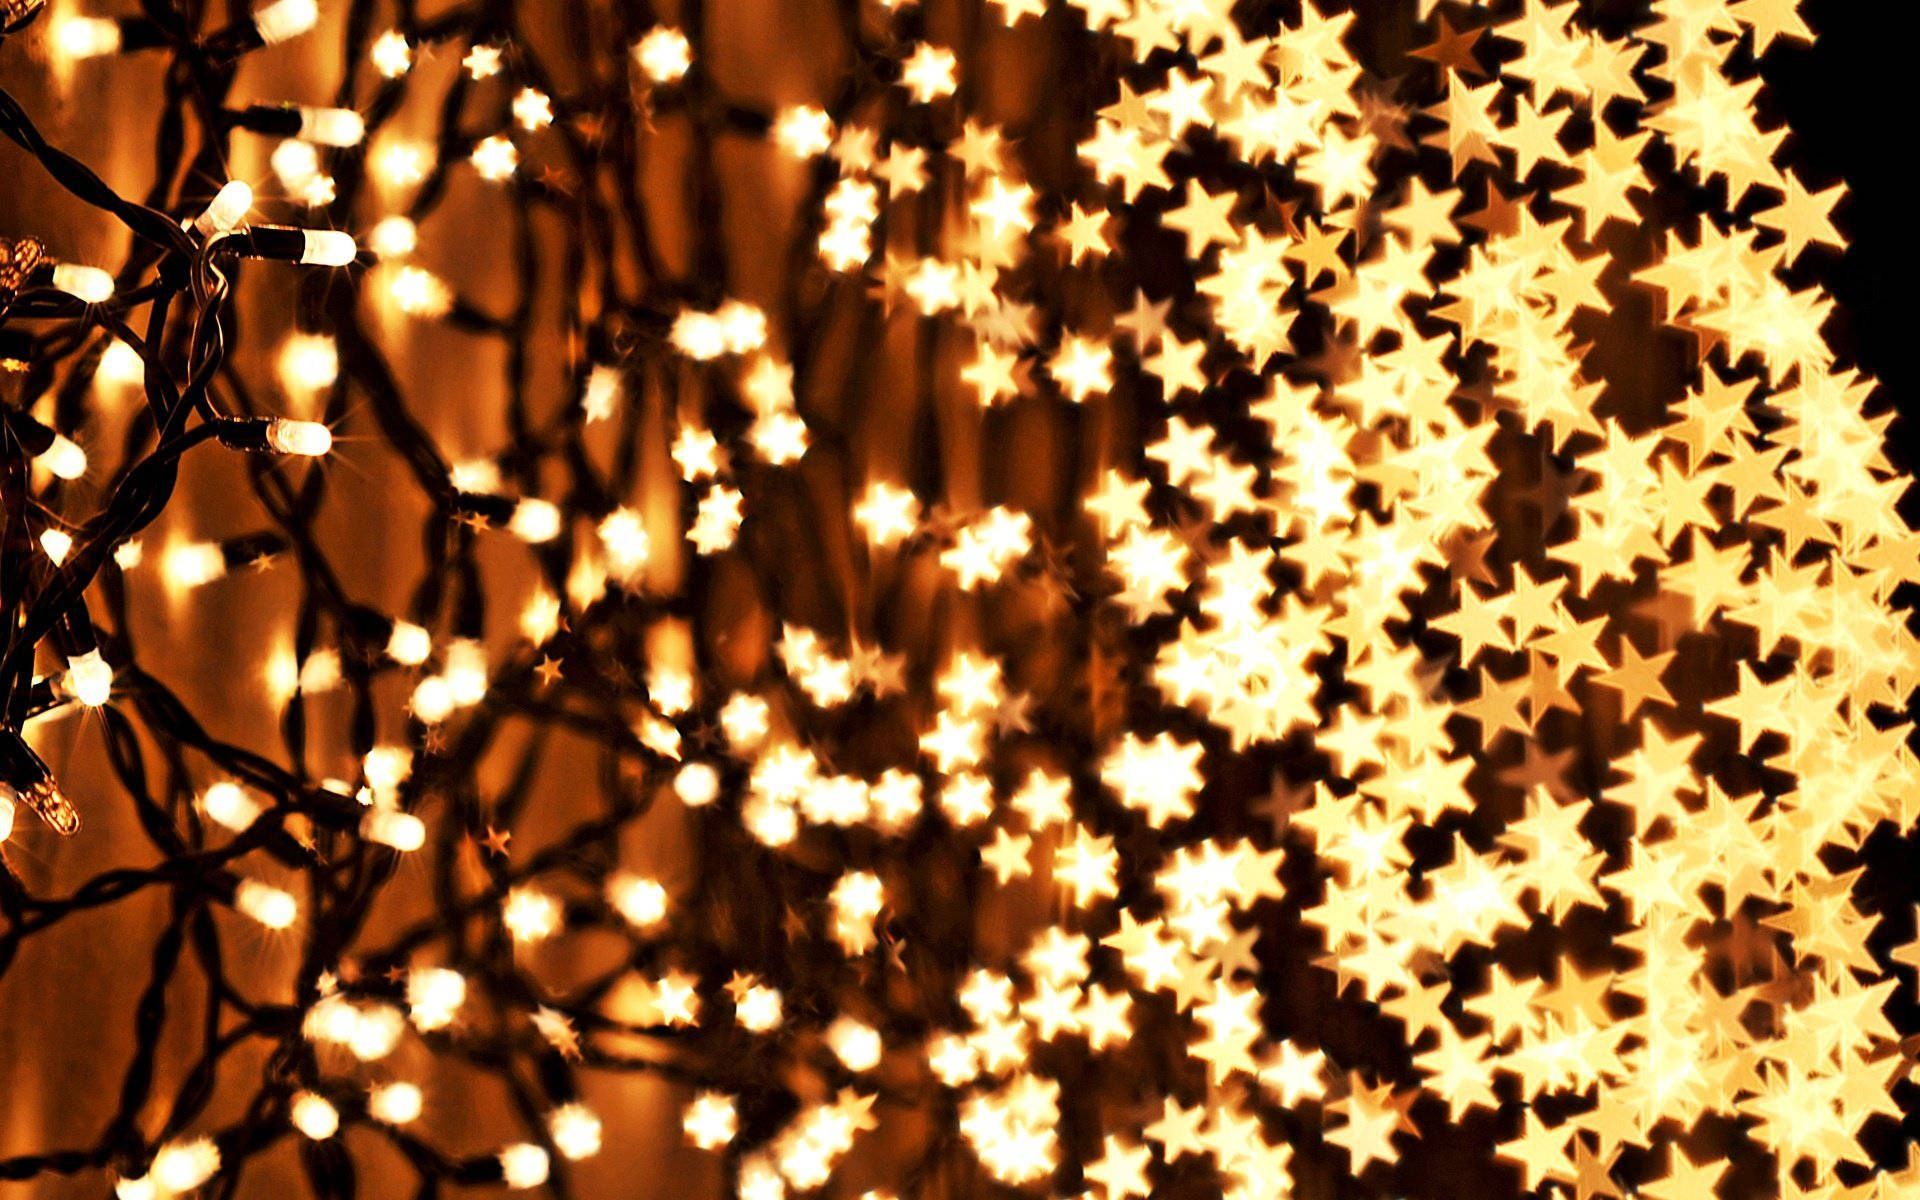 A wall of stars and Christmas lights - Christmas lights, fairy lights